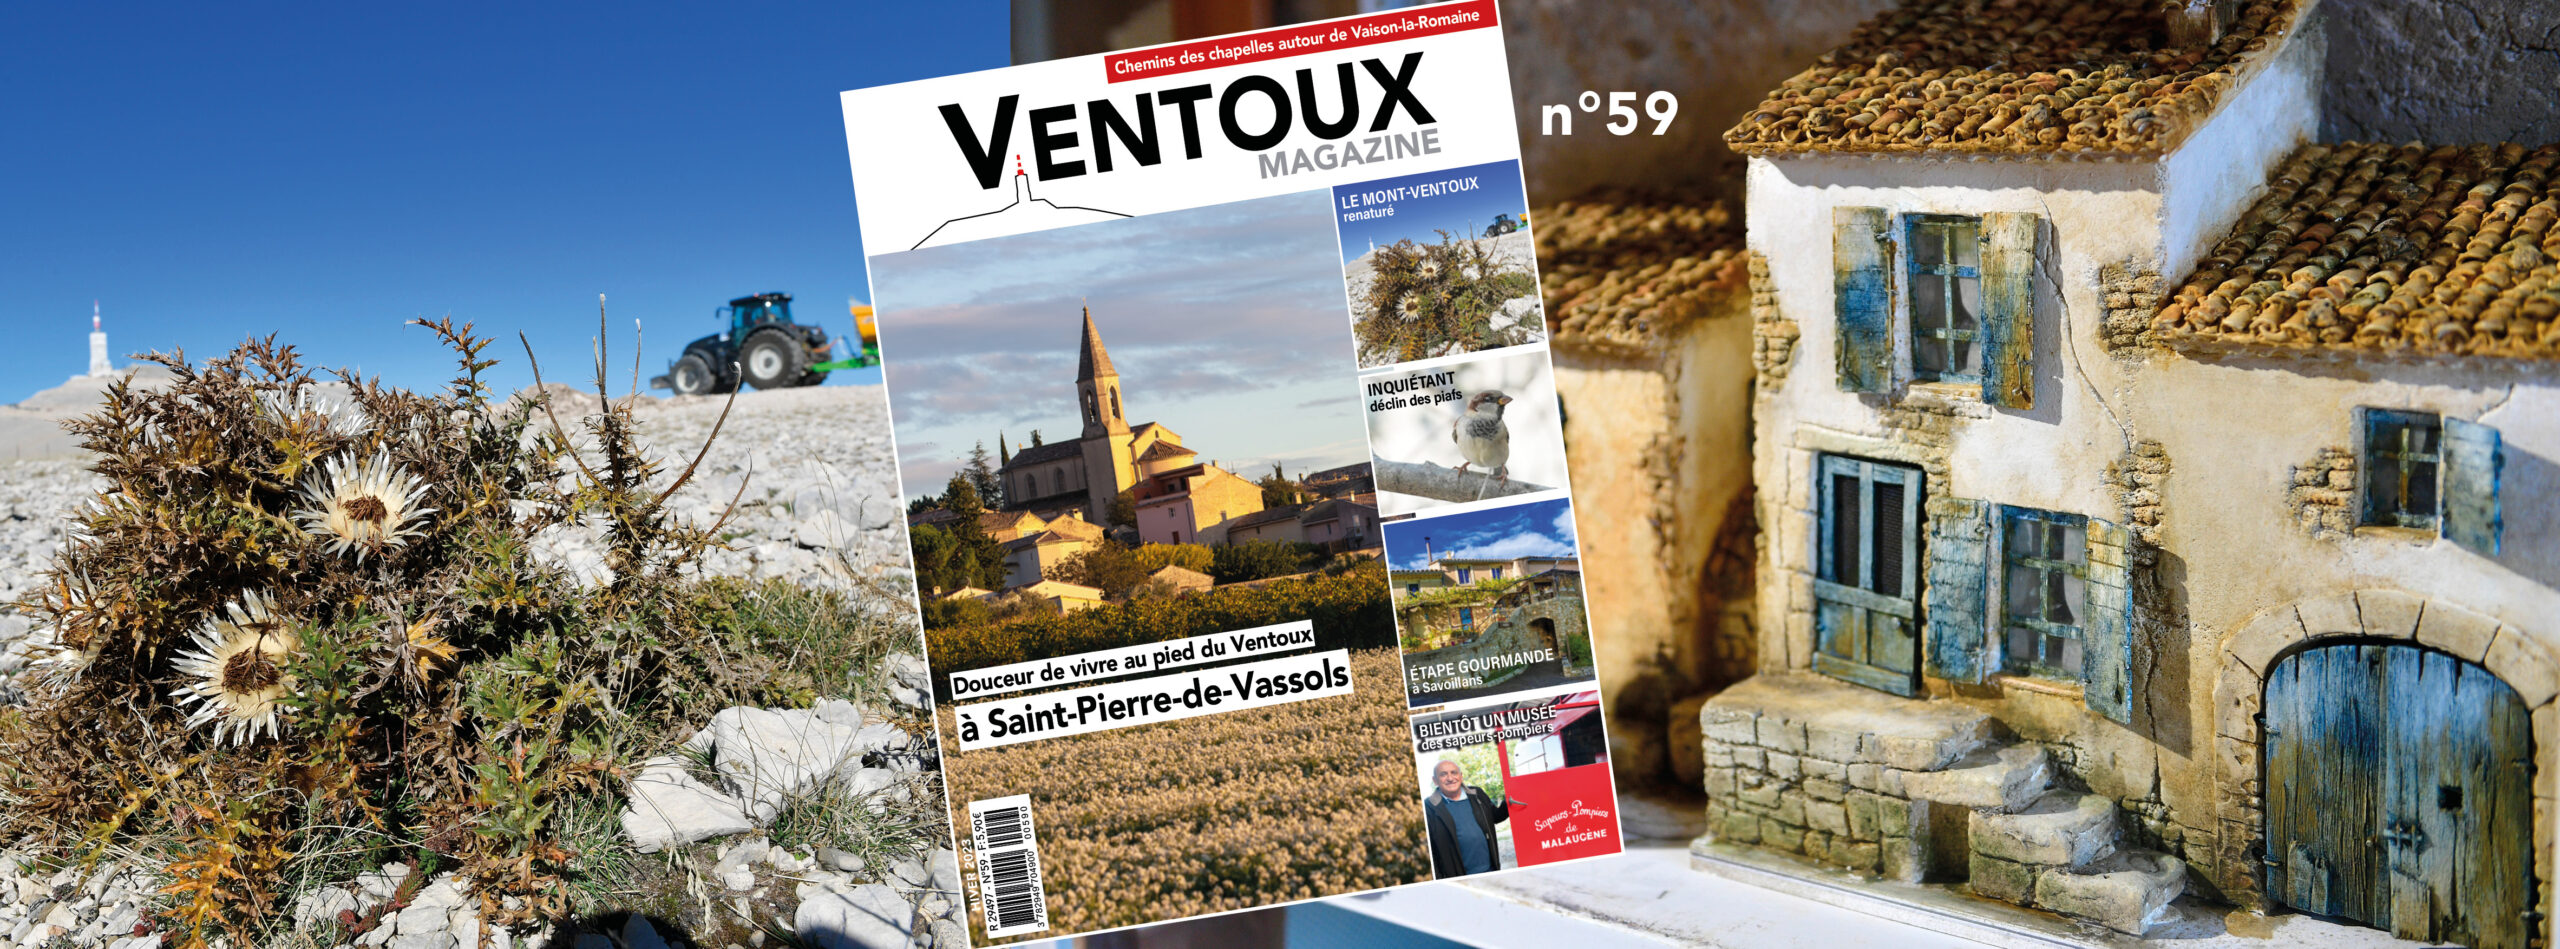 Le nouveau Ventoux Magazine hiver est paru !